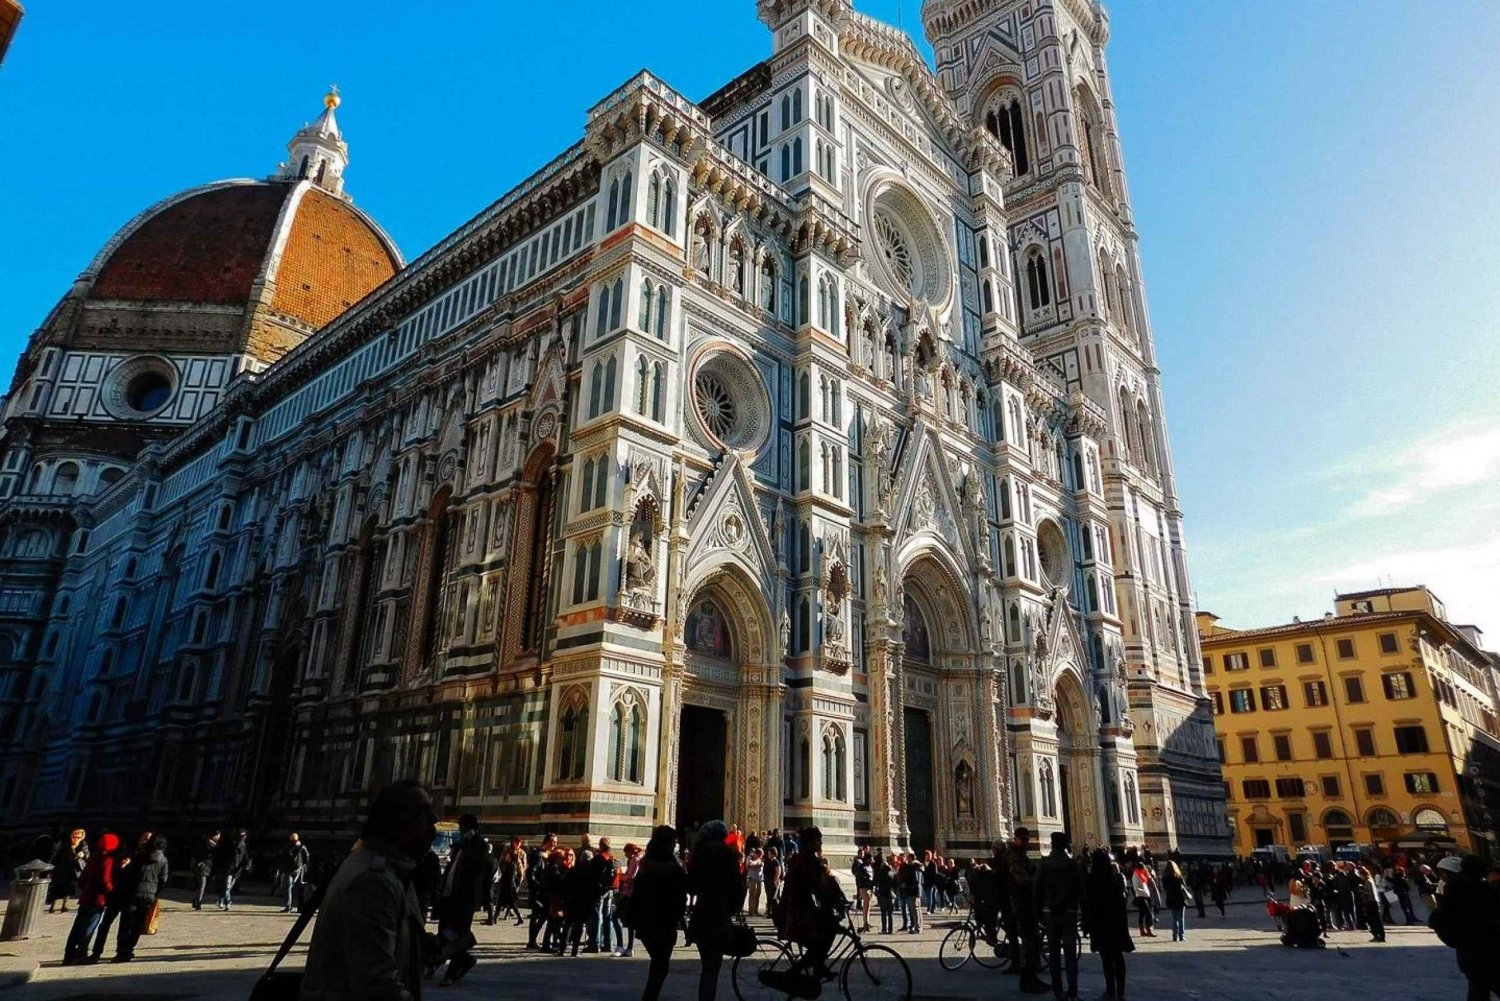 Florença: Duomo Santa Maria del Fiore Visita guiada à Catedral